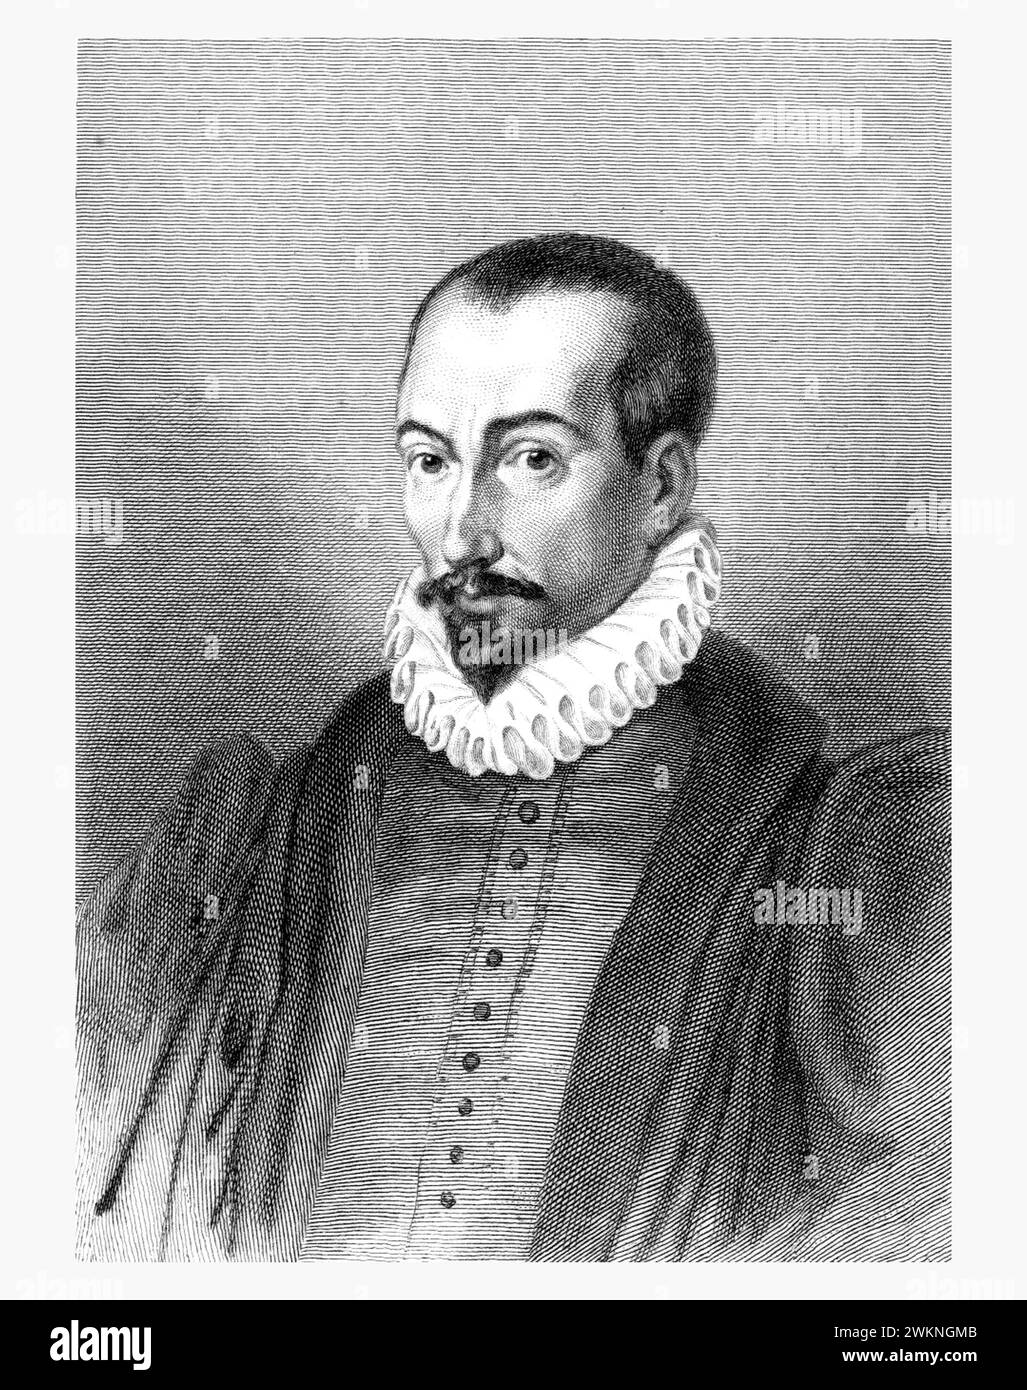 1585 c. , FRANCE : The italian jurist , historian and writer  PIERRE PITHOU ( 1539 - 1596 ). Portrait engraved by Gavard , pubblished in 1839 . - HISTORY - FOTO STORICHE - HISTORIAN - STORICO - SCRITTORE - WRITER - LETTERATURA - LITERATURE - giureconsulto - GIURISTA - LEGGE - LAY - nobili - nobiltà francese - french nobility - FRANCIA - INCISIONE - ENGRAVING - ILLUSTRATION - ILLUSTRAZIONE  - collar - collare - colletto - GORGIERA - pizzo - lace -   beard - barba --- Archivio GBB Stock Photo